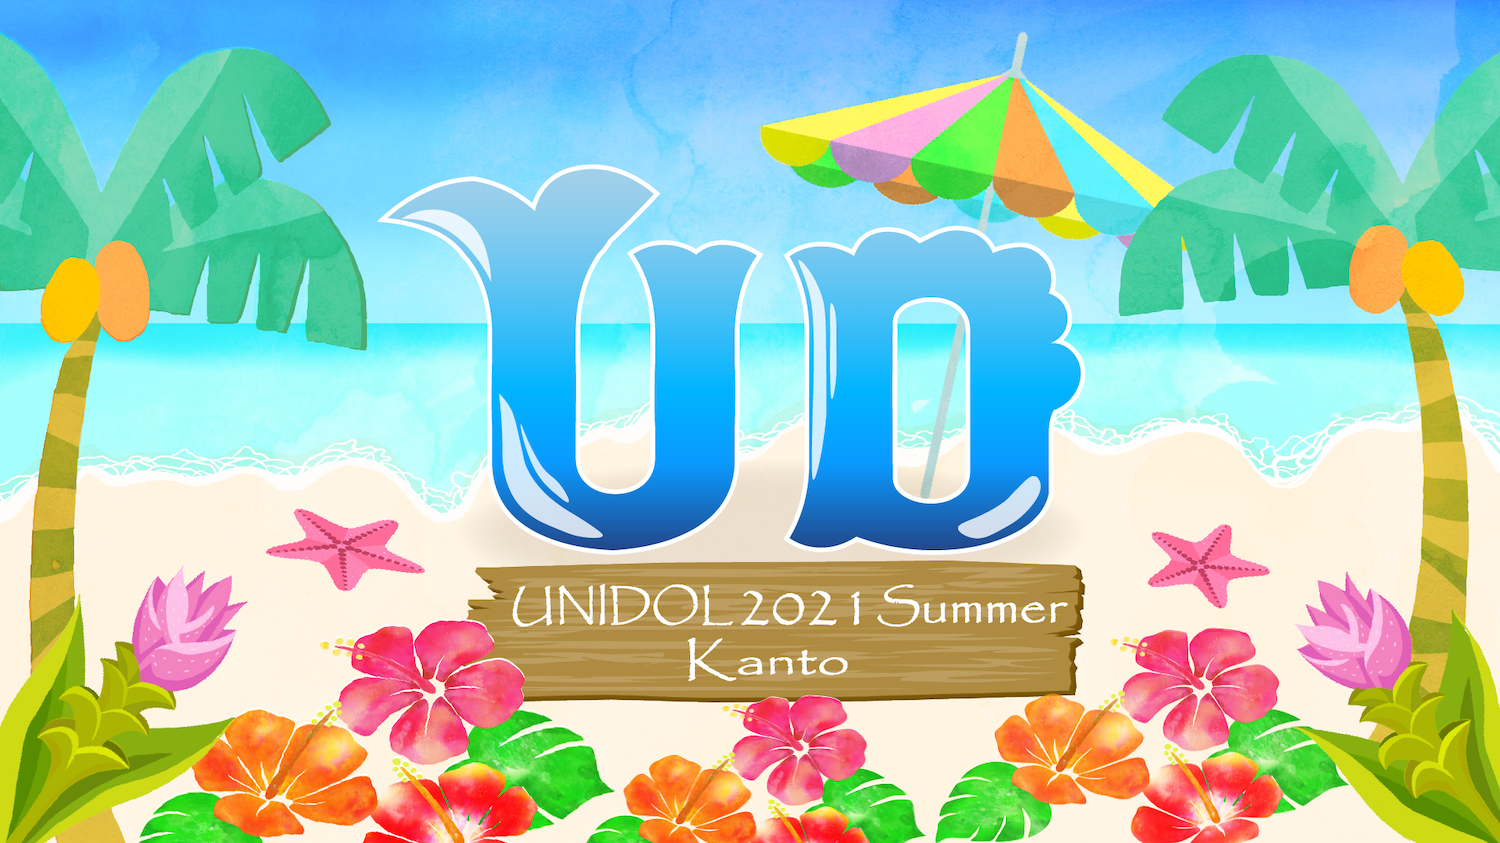 UNIDOL2021 Summer